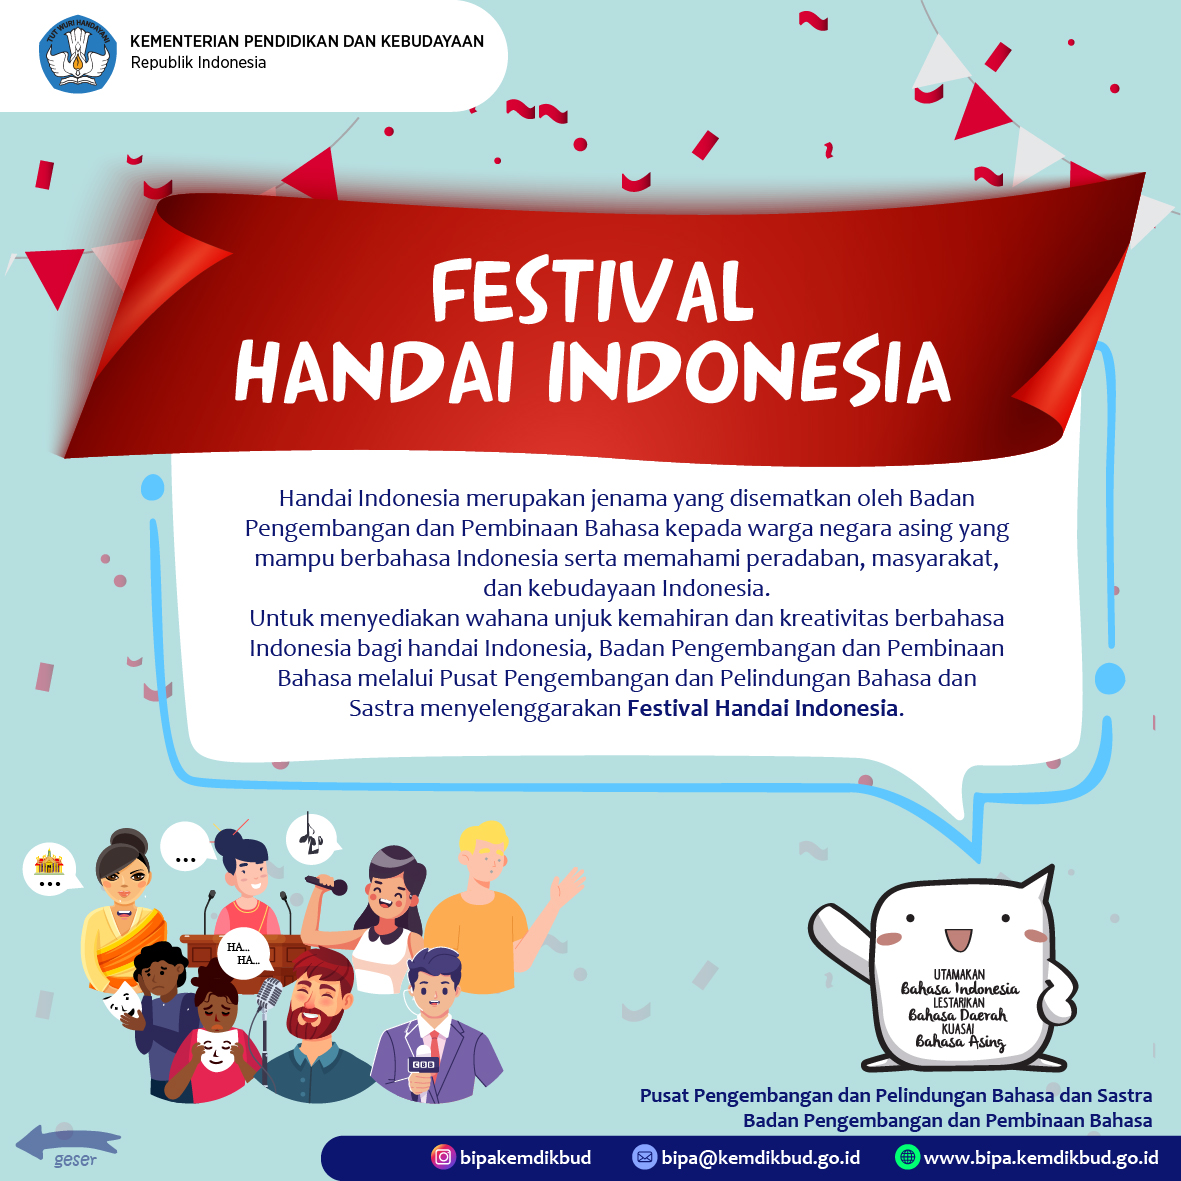 Festival Handai Indonesia